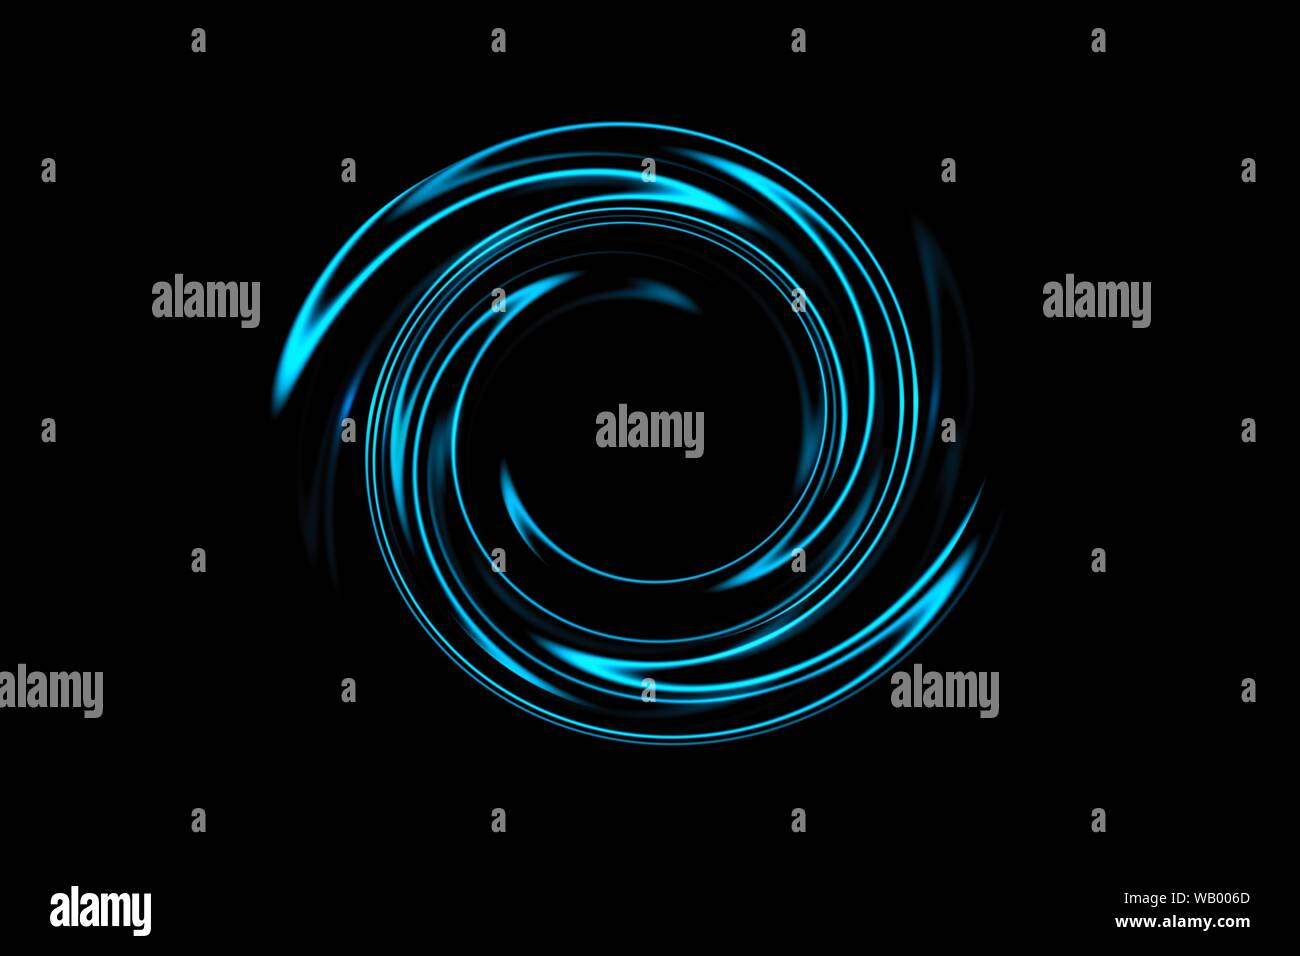 Abstract spiral tunnel avec light blue circle tour sur fond noir Banque D'Images